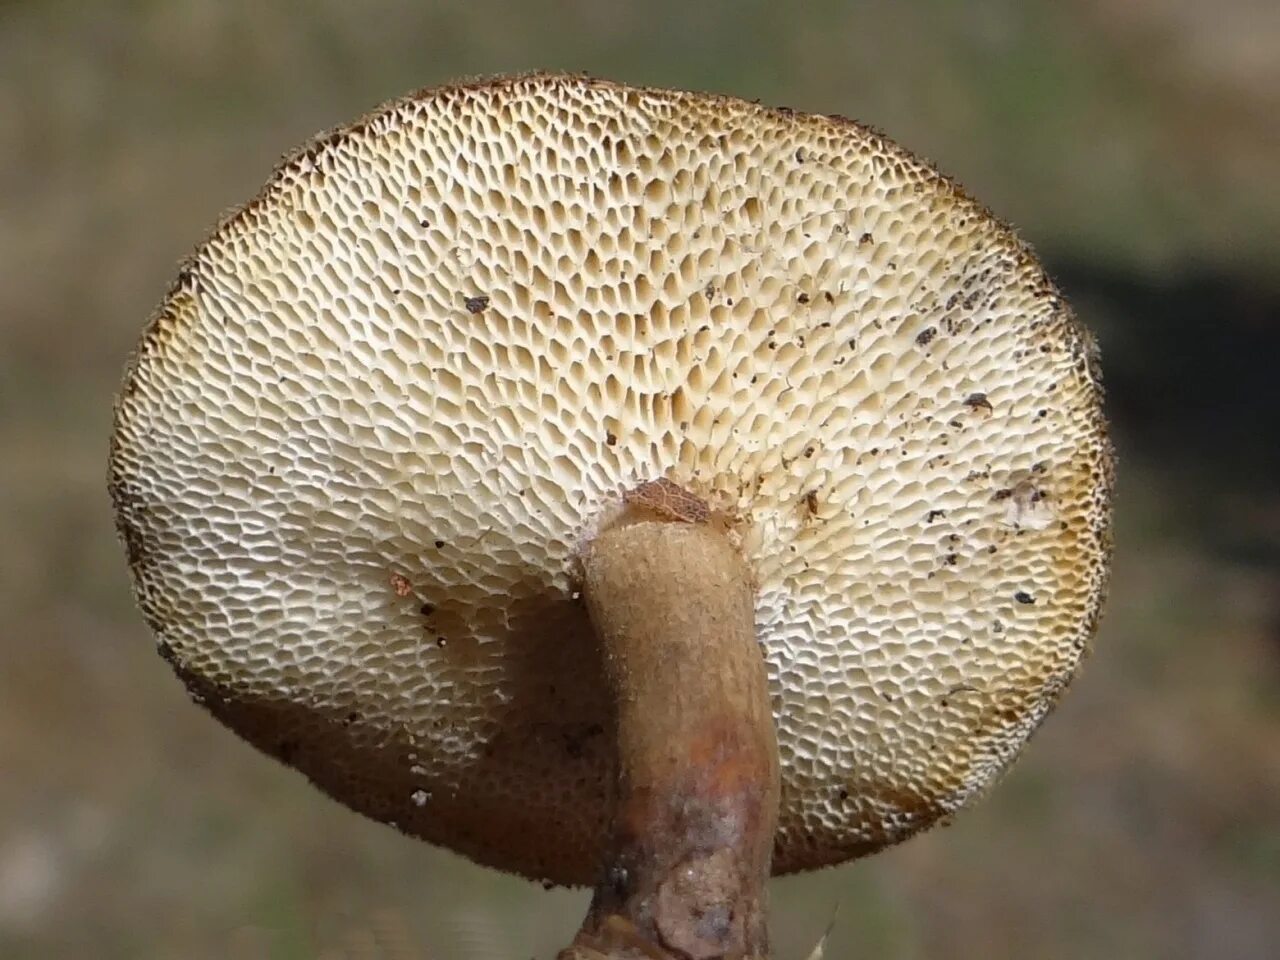 Polyporus tuberaster Полипорус клубненосный. Трутовик гриб клубненосный. Трутовик клубненосный Polyporus tuberaster. Polyporus rutinalis. Пластинчатые являются